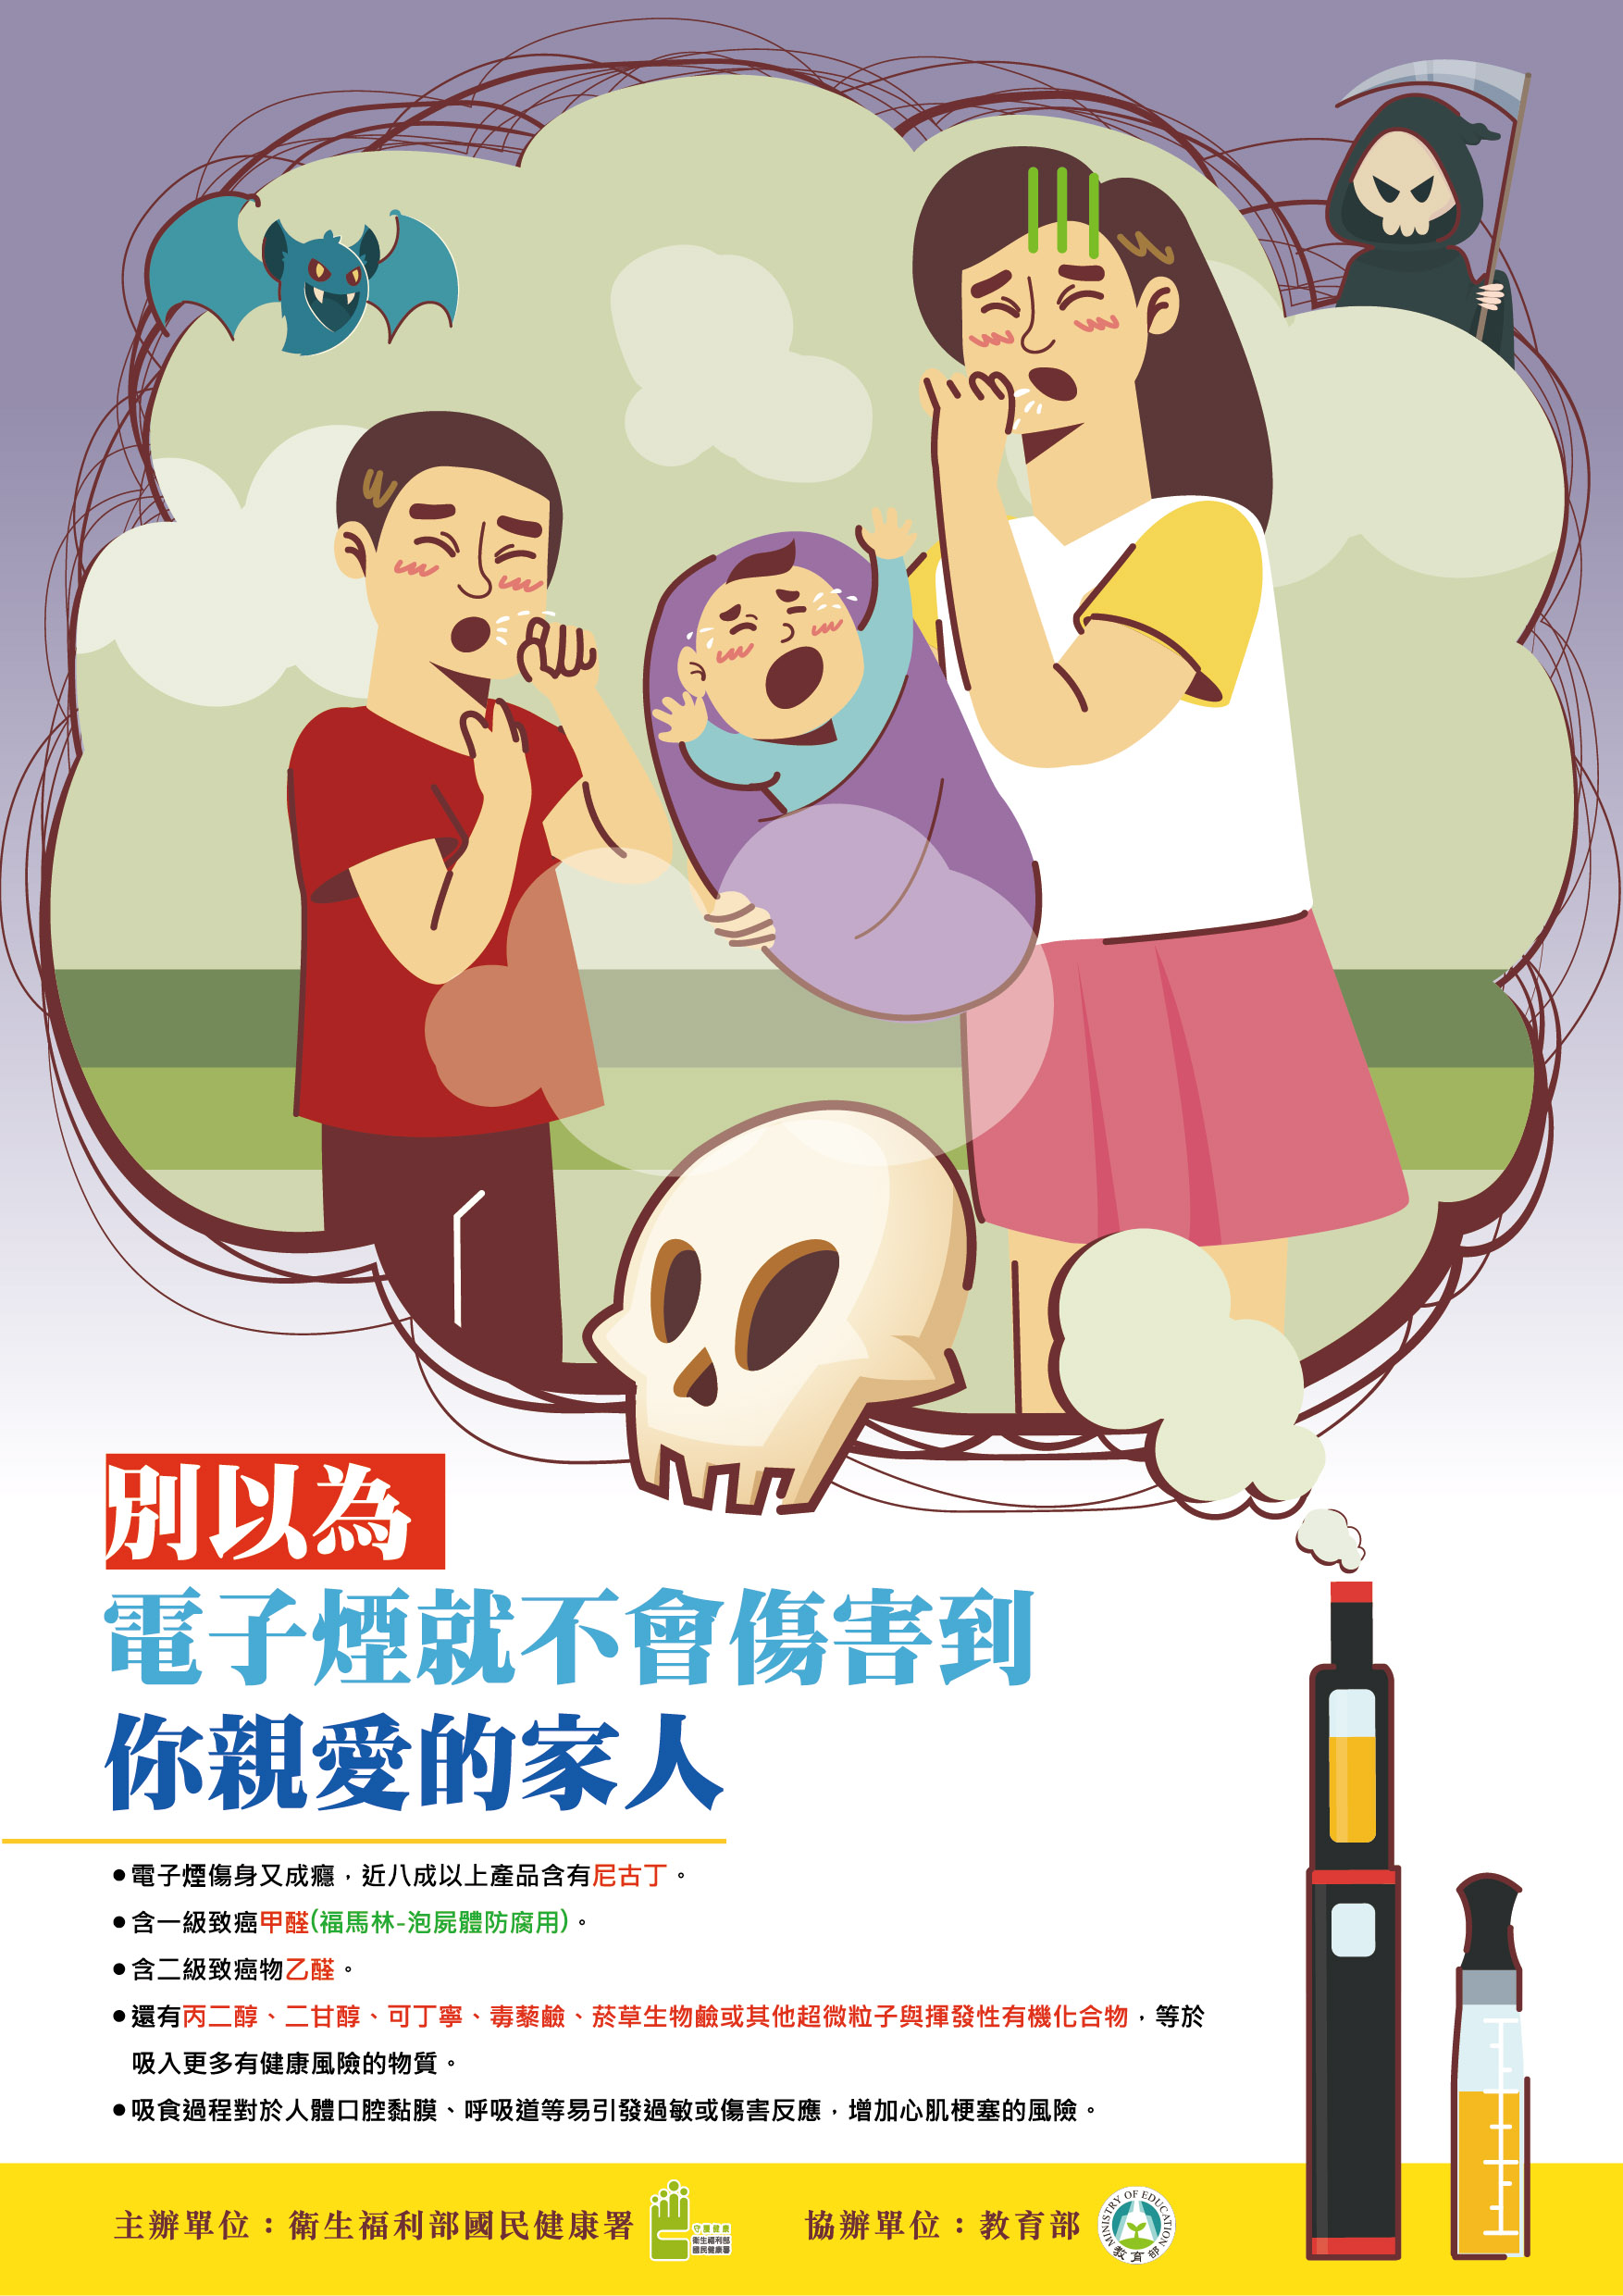 海報-佳作-別以為電子煙就不會傷害你家人 (遠離迷霧傷害校園創意圖文徵選活動)